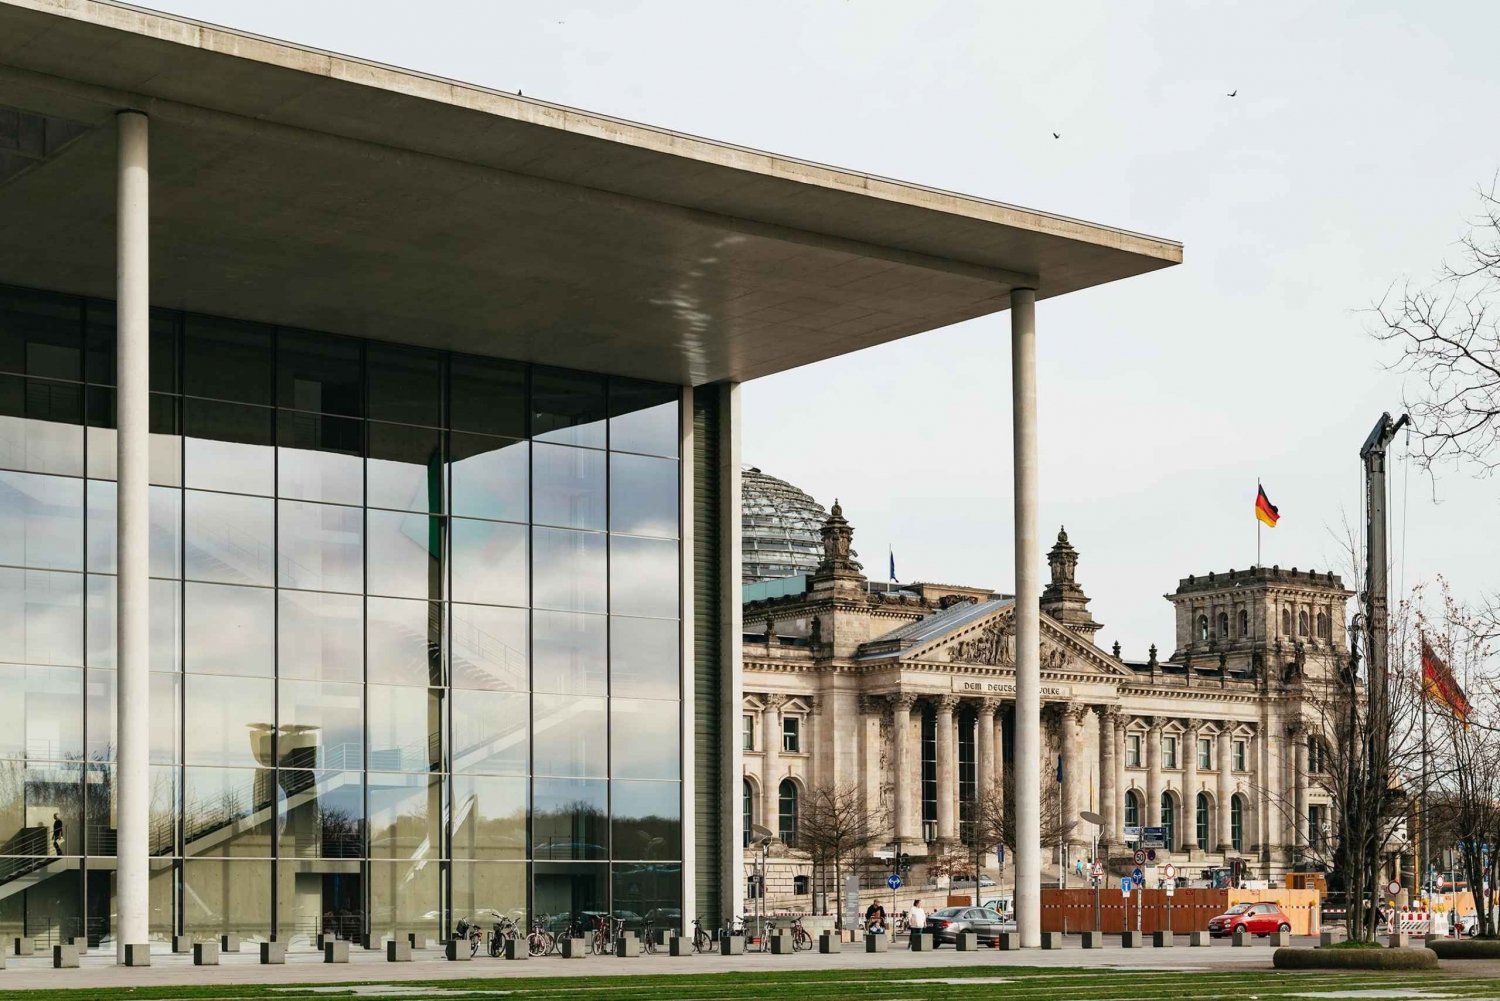 Berlino: Tour guidato a piedi intorno al Reichstag